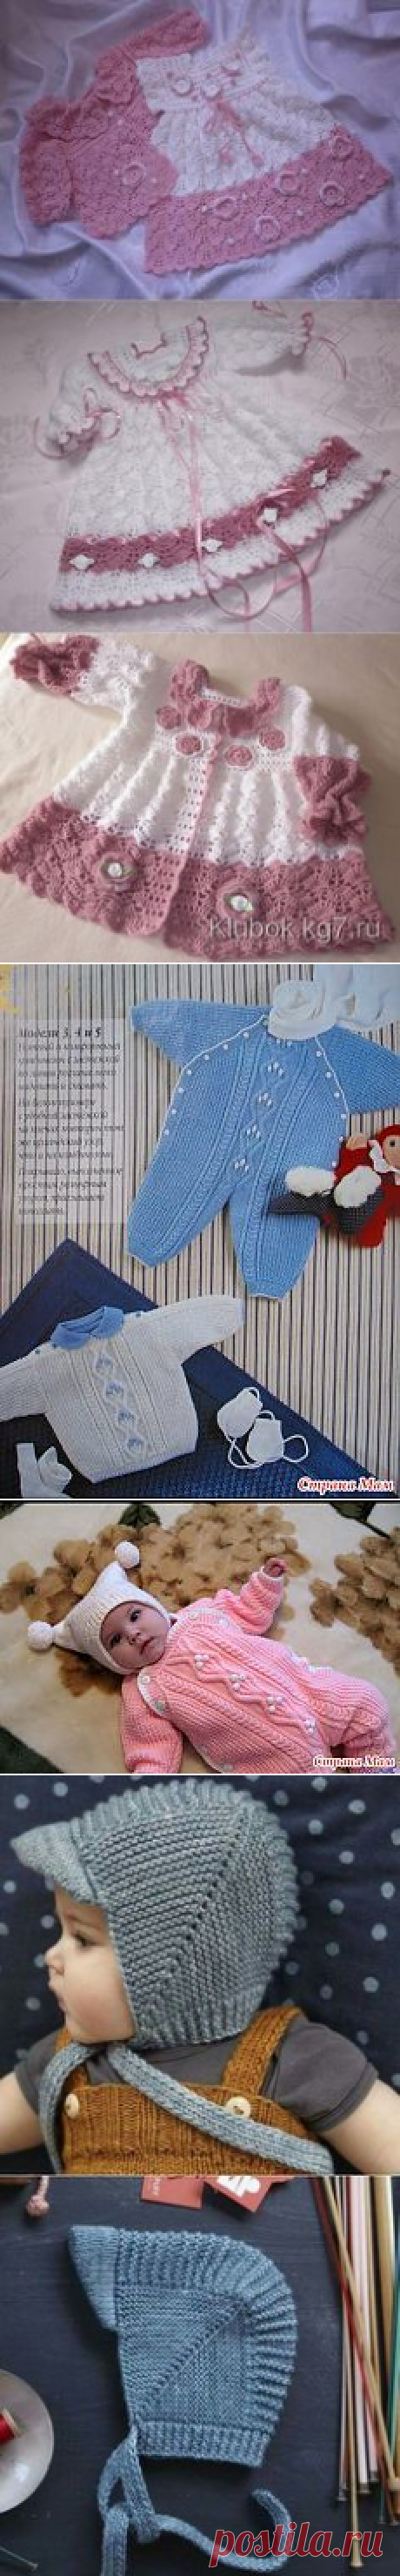 Малыши | Knitting paterns